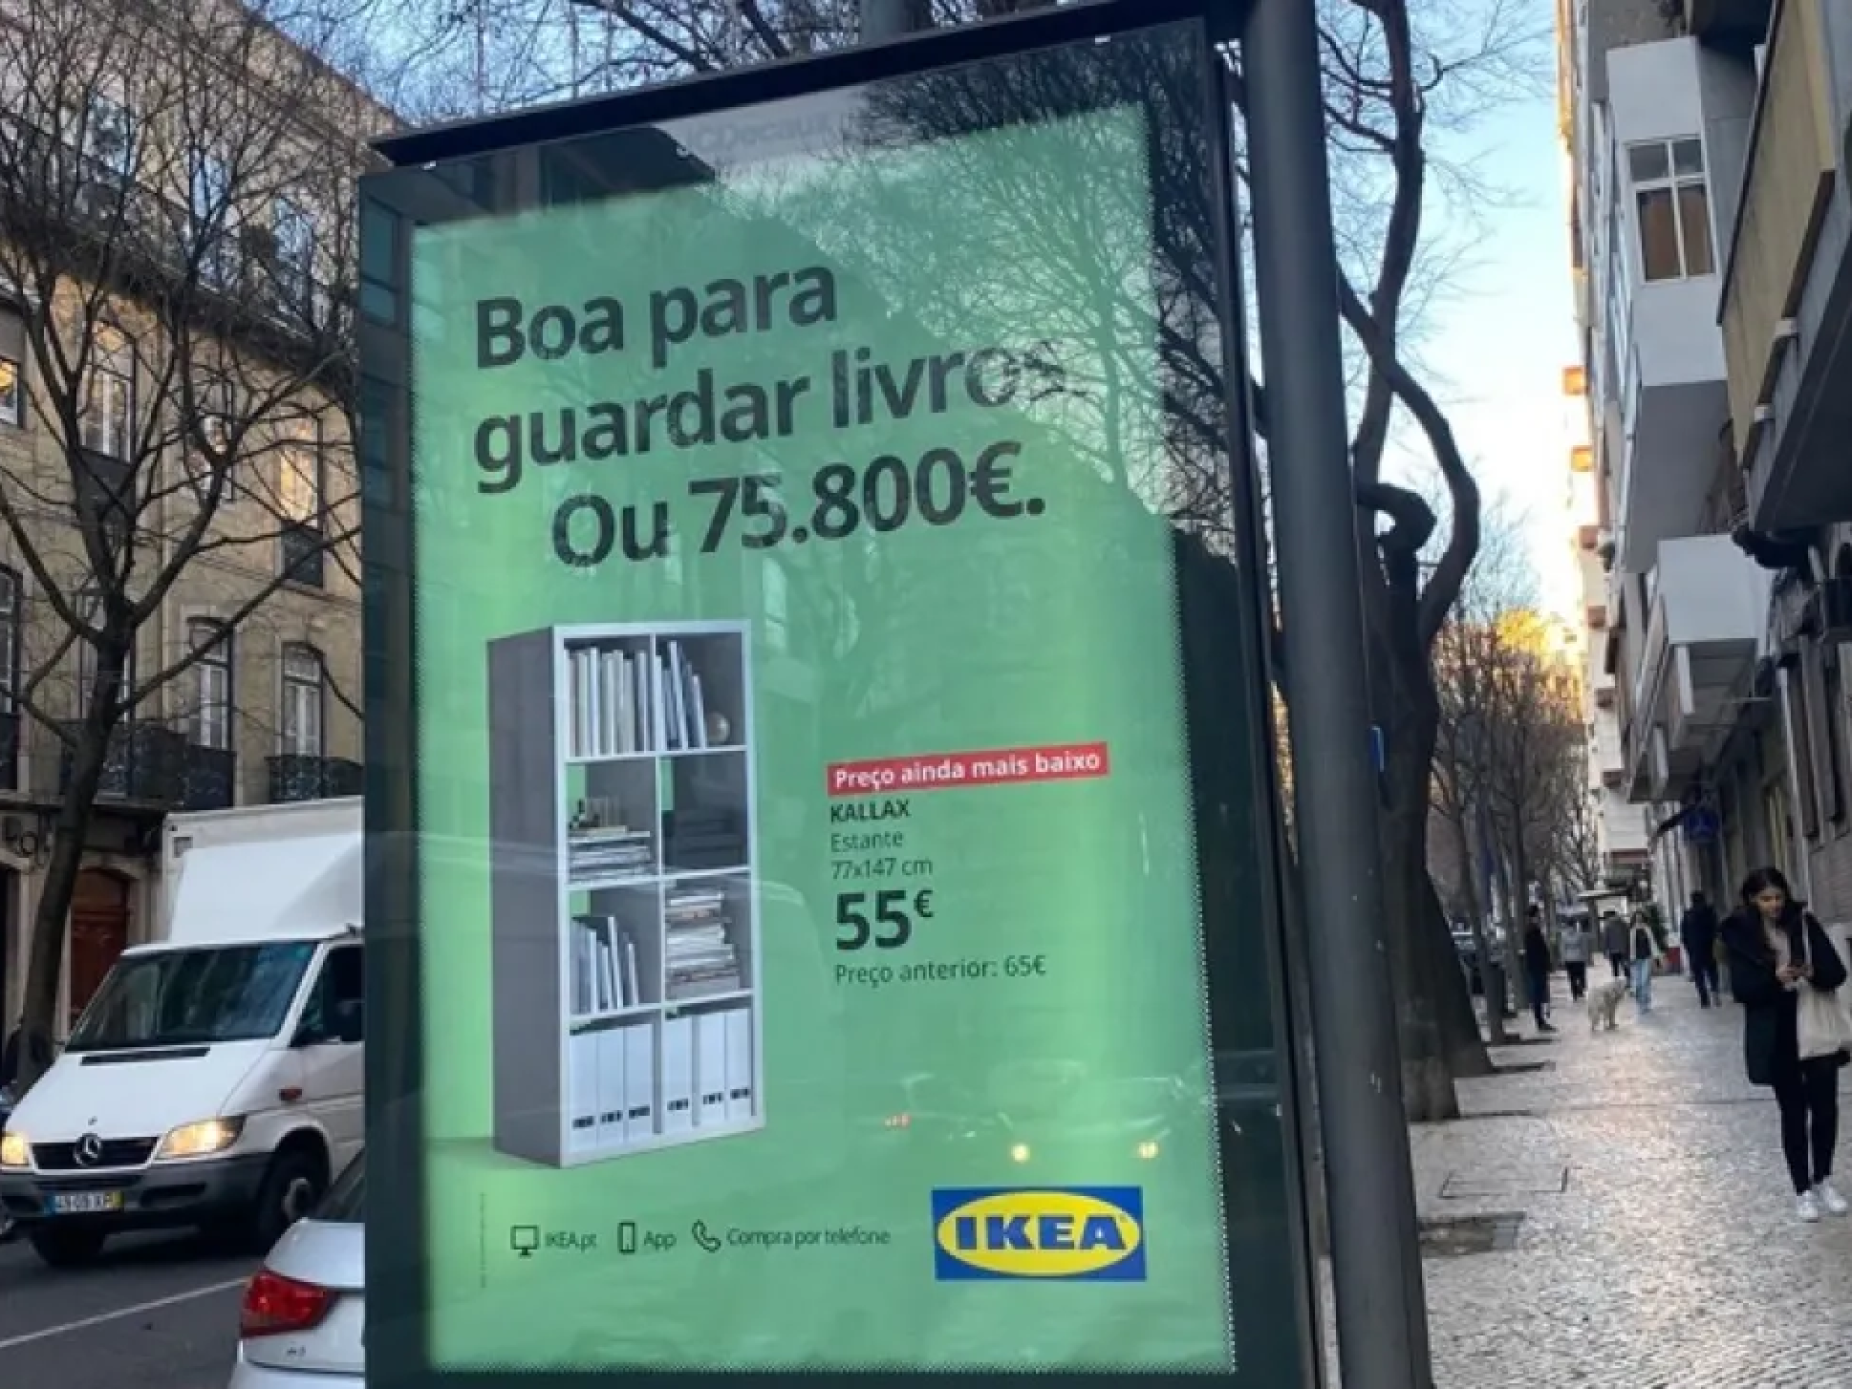 Publicidade do IKEA já deu queixas na CNE